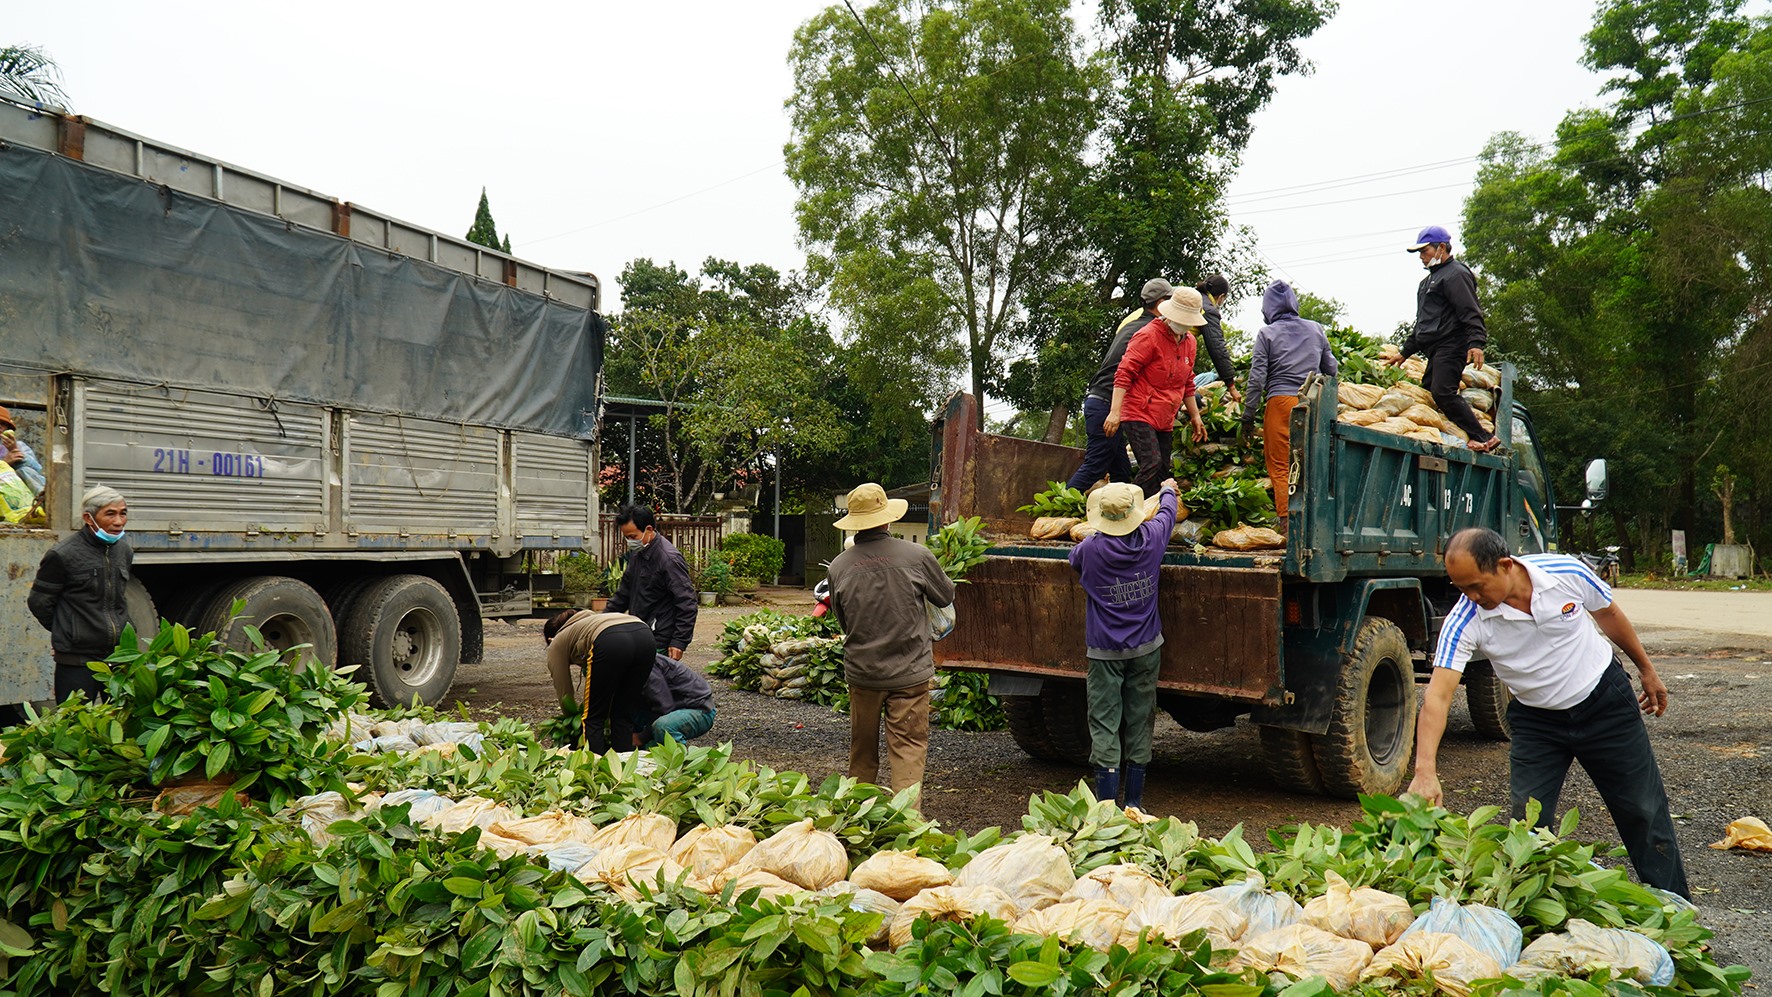 UBND huyện Cam Lộ hỗ trợ một phần cây giống cho người dân mở rộng trồng quế trong năm 2022 - Ảnh: Anh Vũ